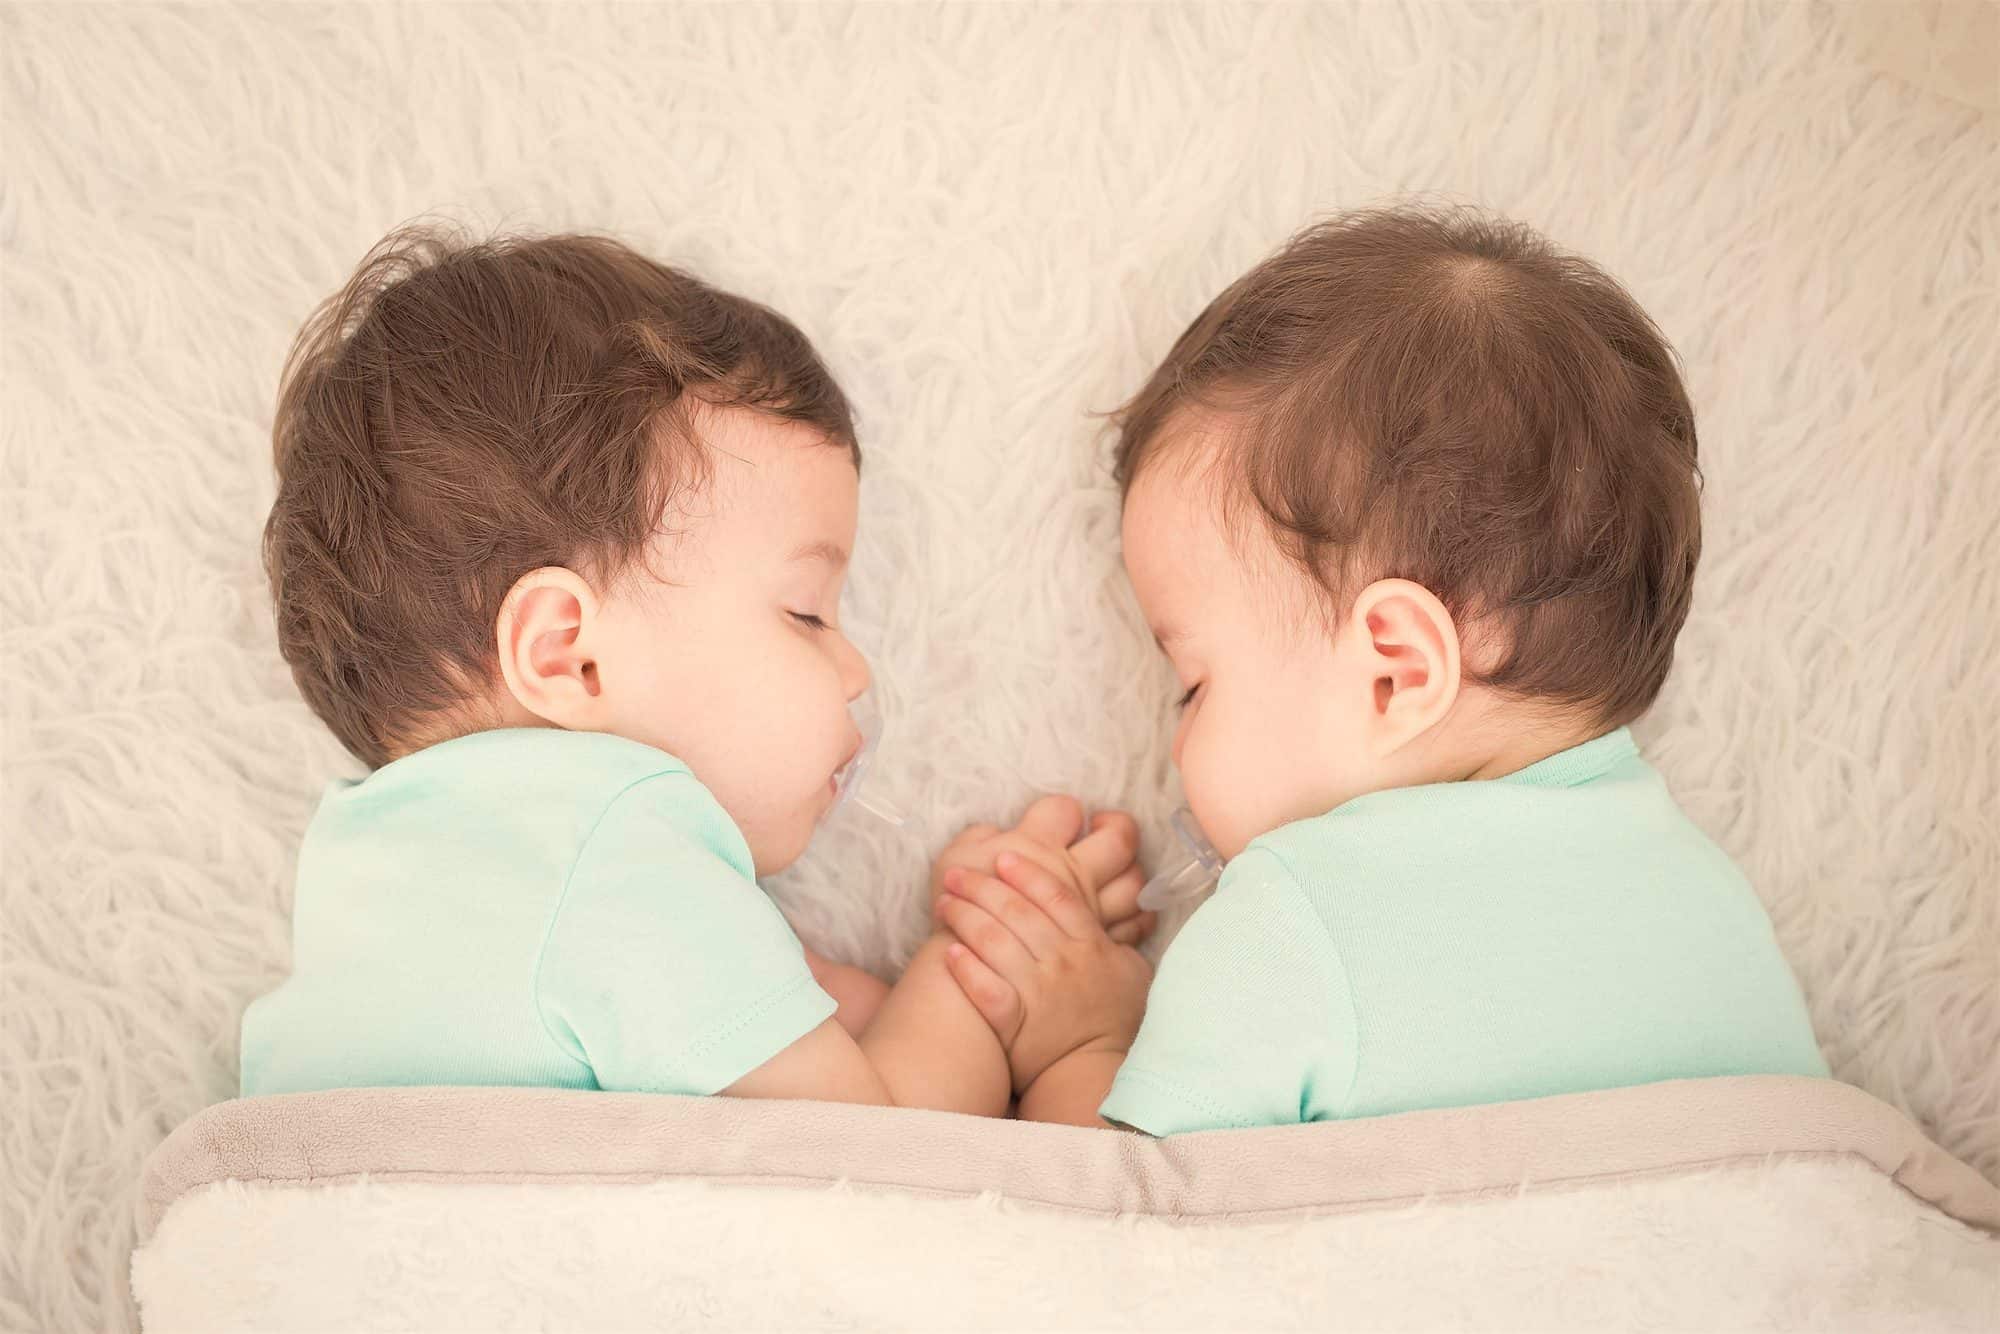 Colecho - Dormir juntos ofrece más beneficios que riesgos para el bebé